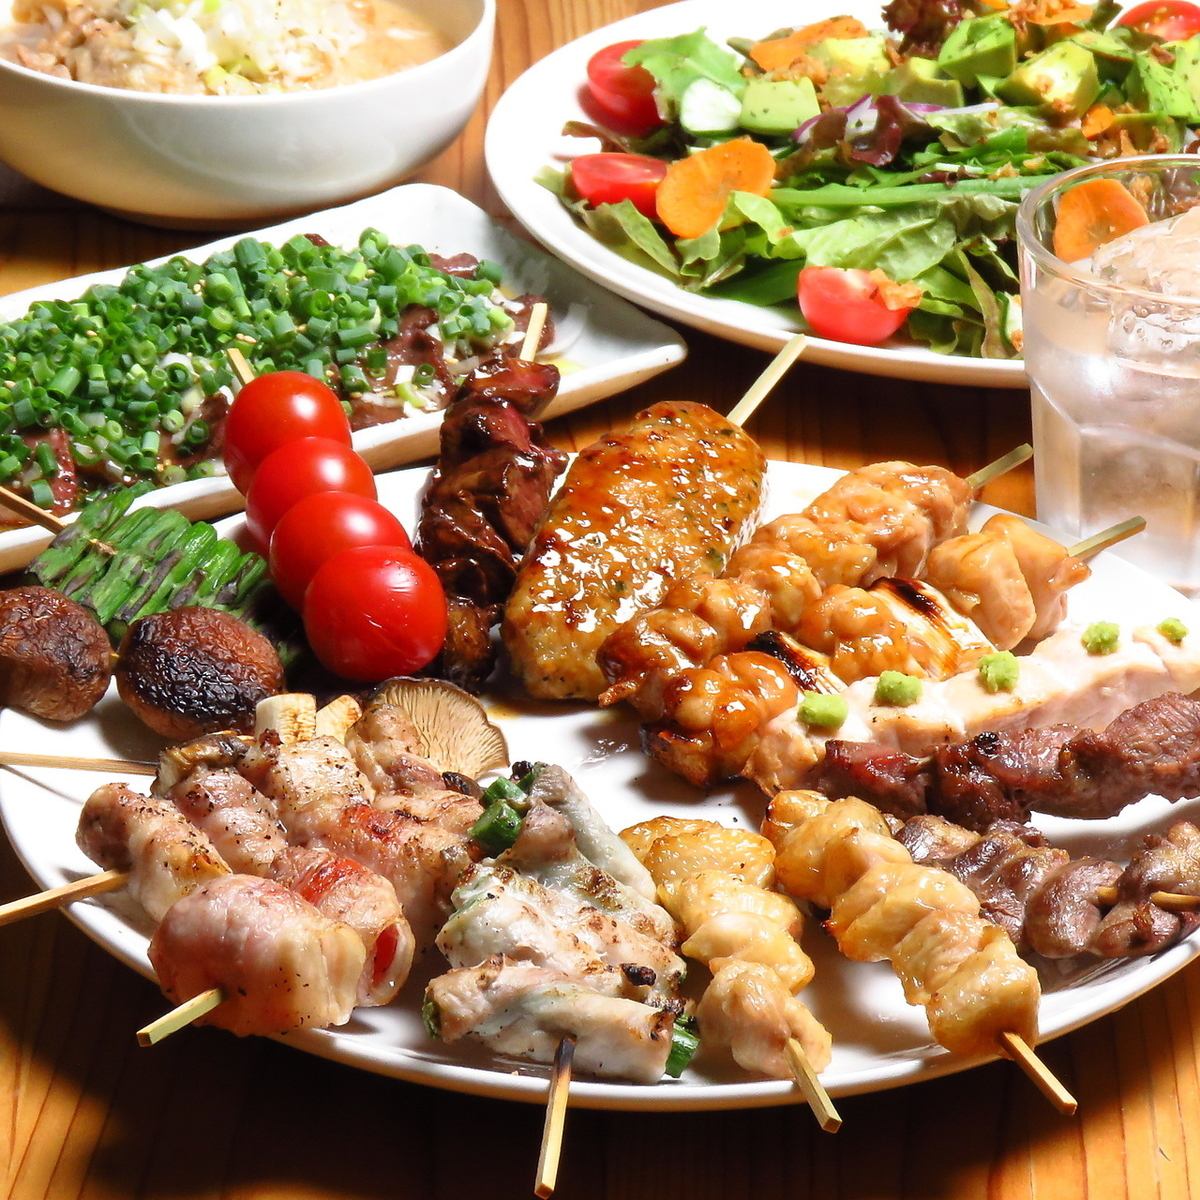 我們的菜單上有各種各樣的串燒，包括雞肉串、豬肉串、牛舌串和蔬菜串！